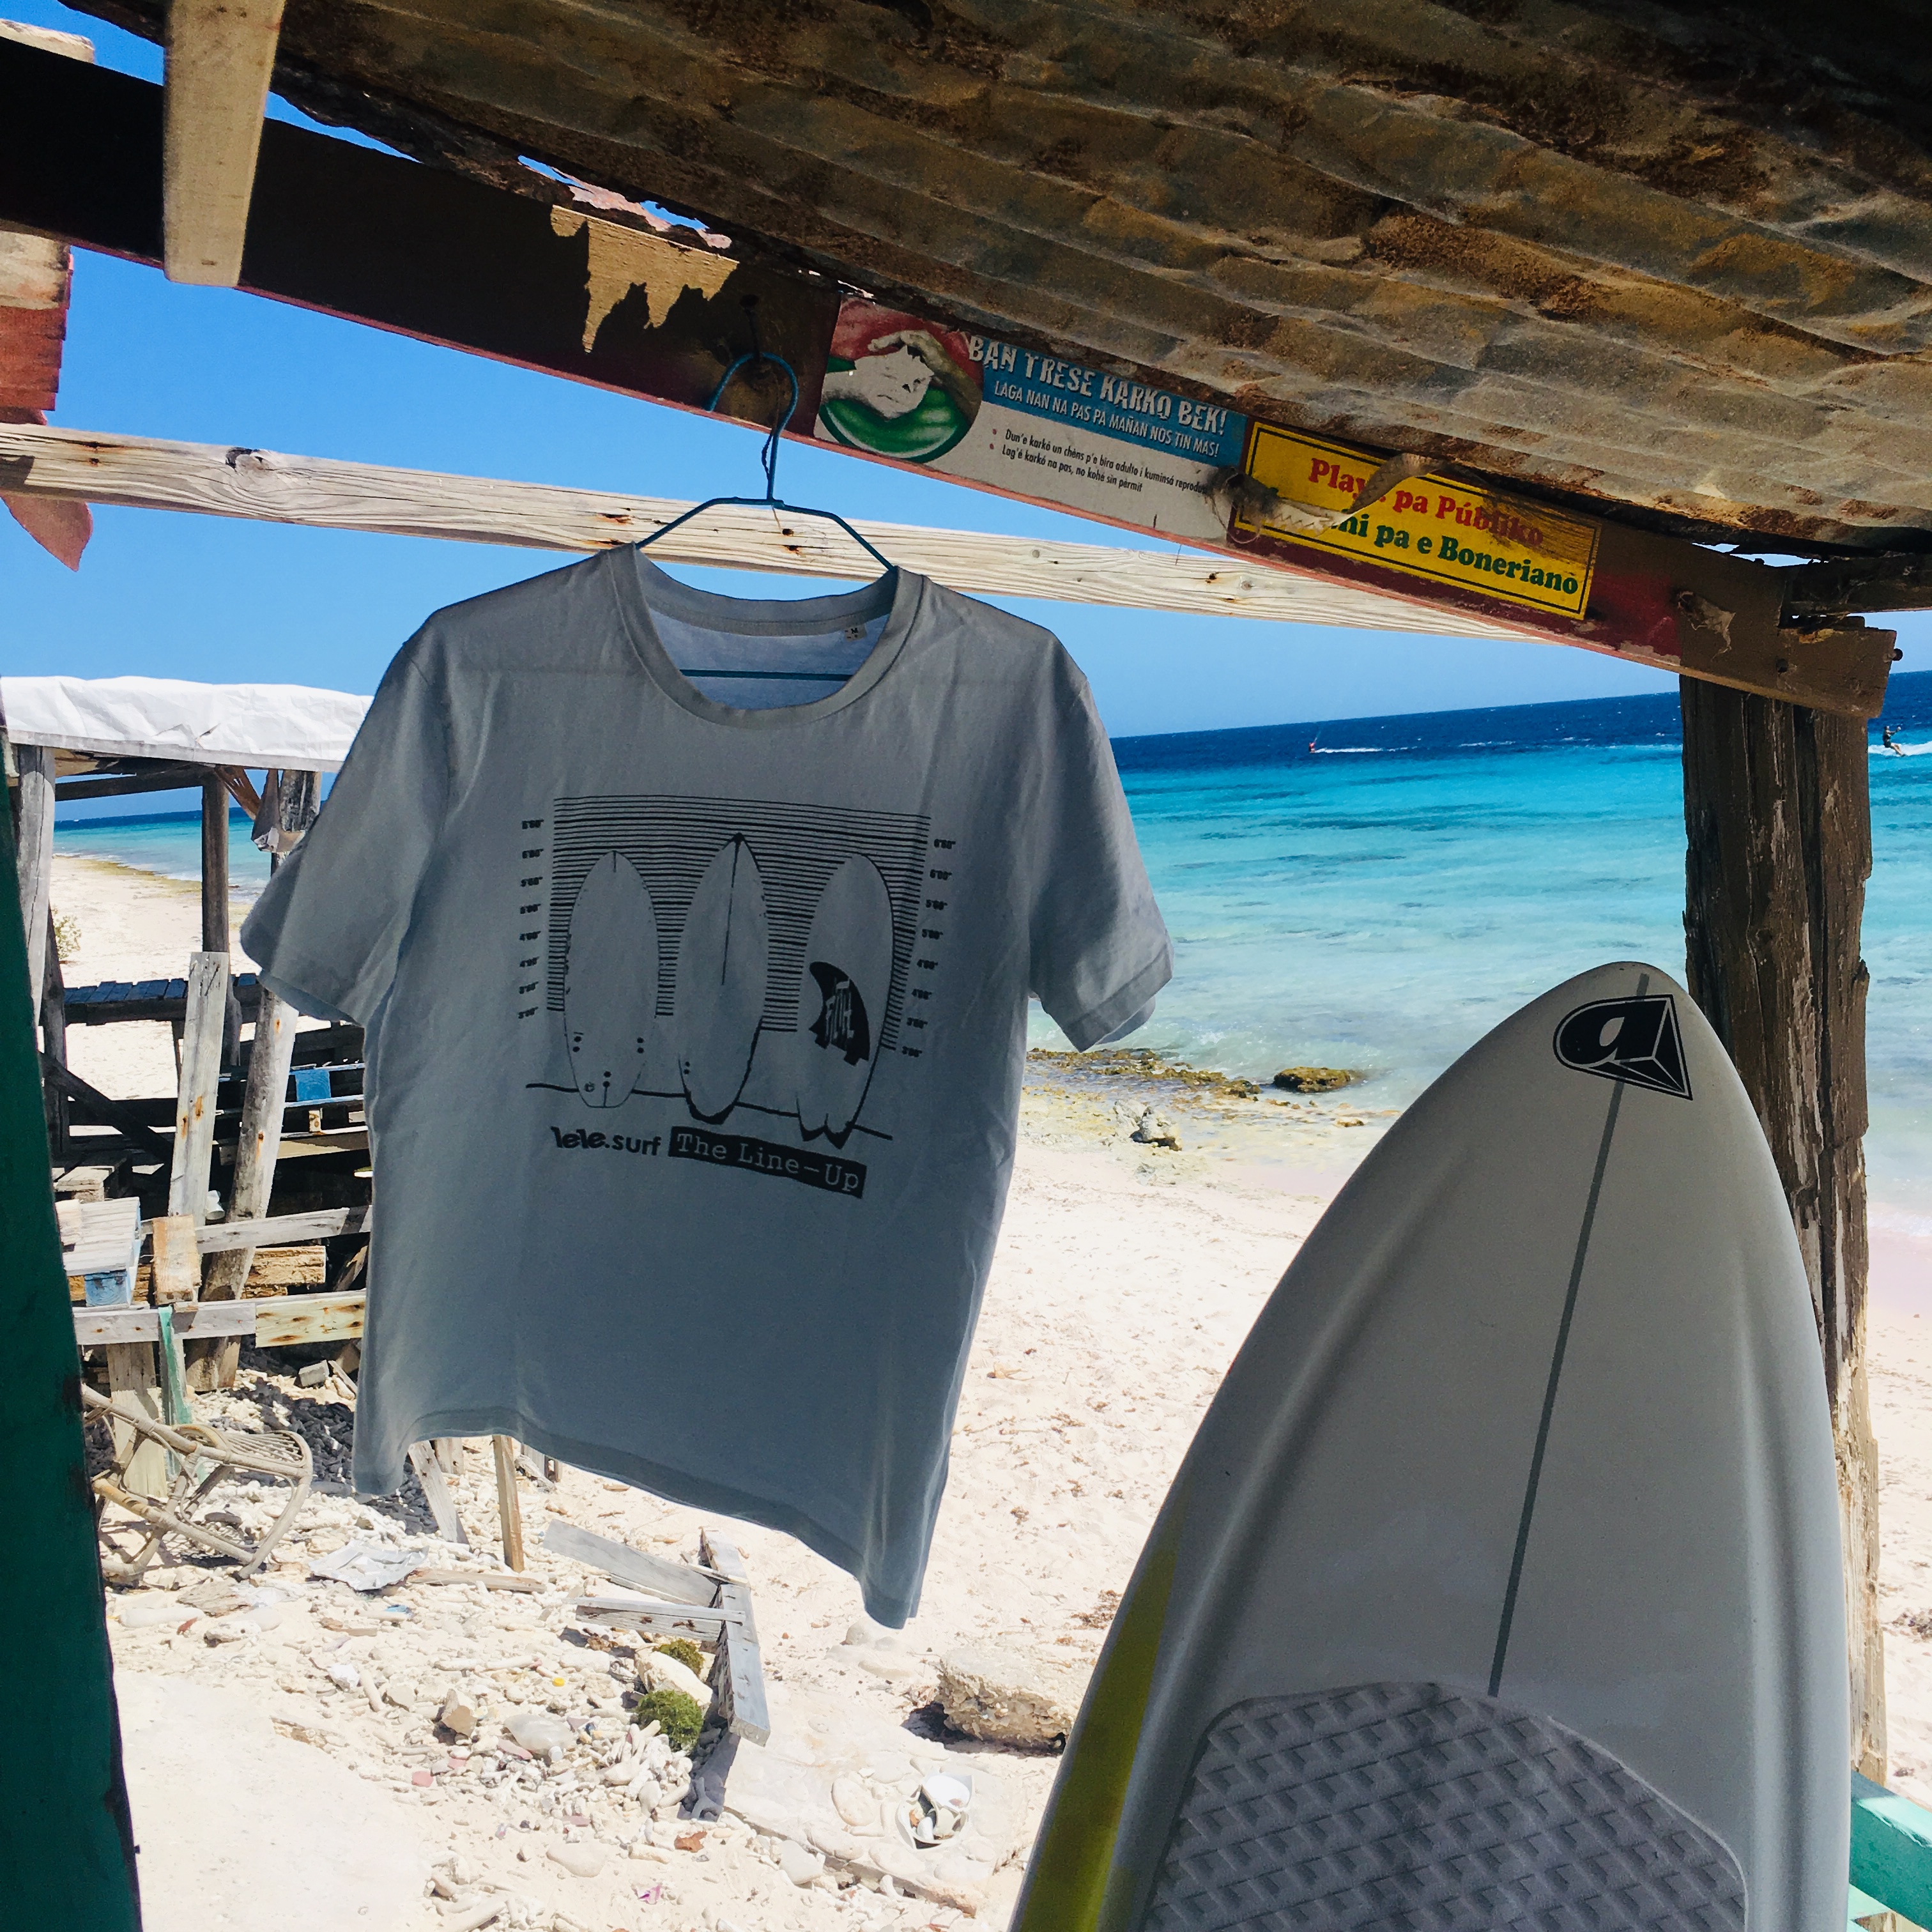 Het ultieme ‘Line-up’ surf T-shirt, hangend in de wind in de vissershut op Atlantis Kite Beach